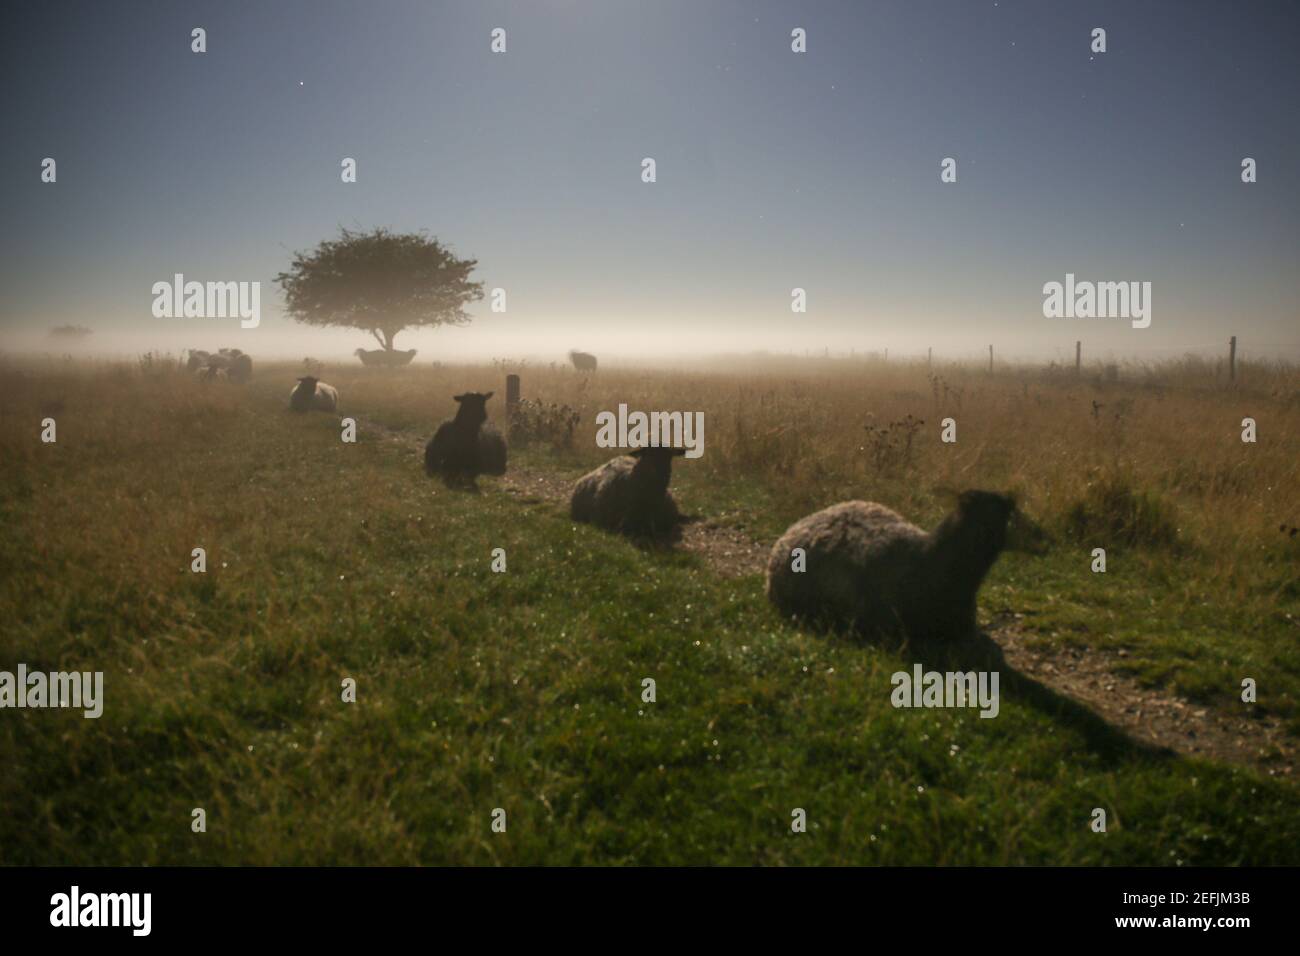 Kopenhagen, Dänemark - 28. September 2015. Grassende Schafe in offener Landschaft bei Kalvebod Fælled, auch bekannt als Vestamager, das ein offenes Naturschutzgebiet in Kopenhagen ist. Stockfoto